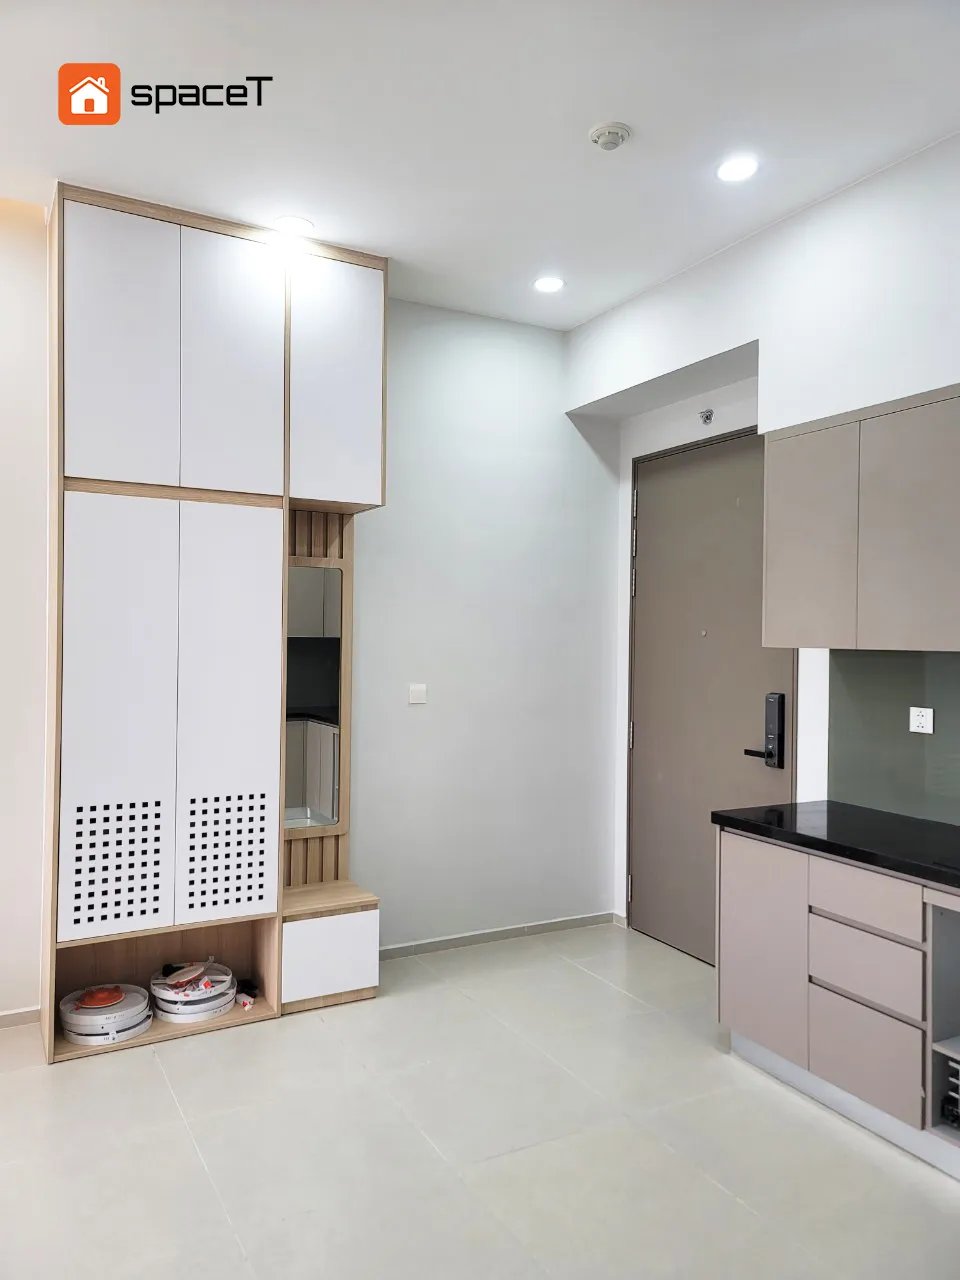 Công trình hoàn thiện nội thất cho phòng bếp căn hộ Westgate Bình Chánh theo phong cách Scandinavian